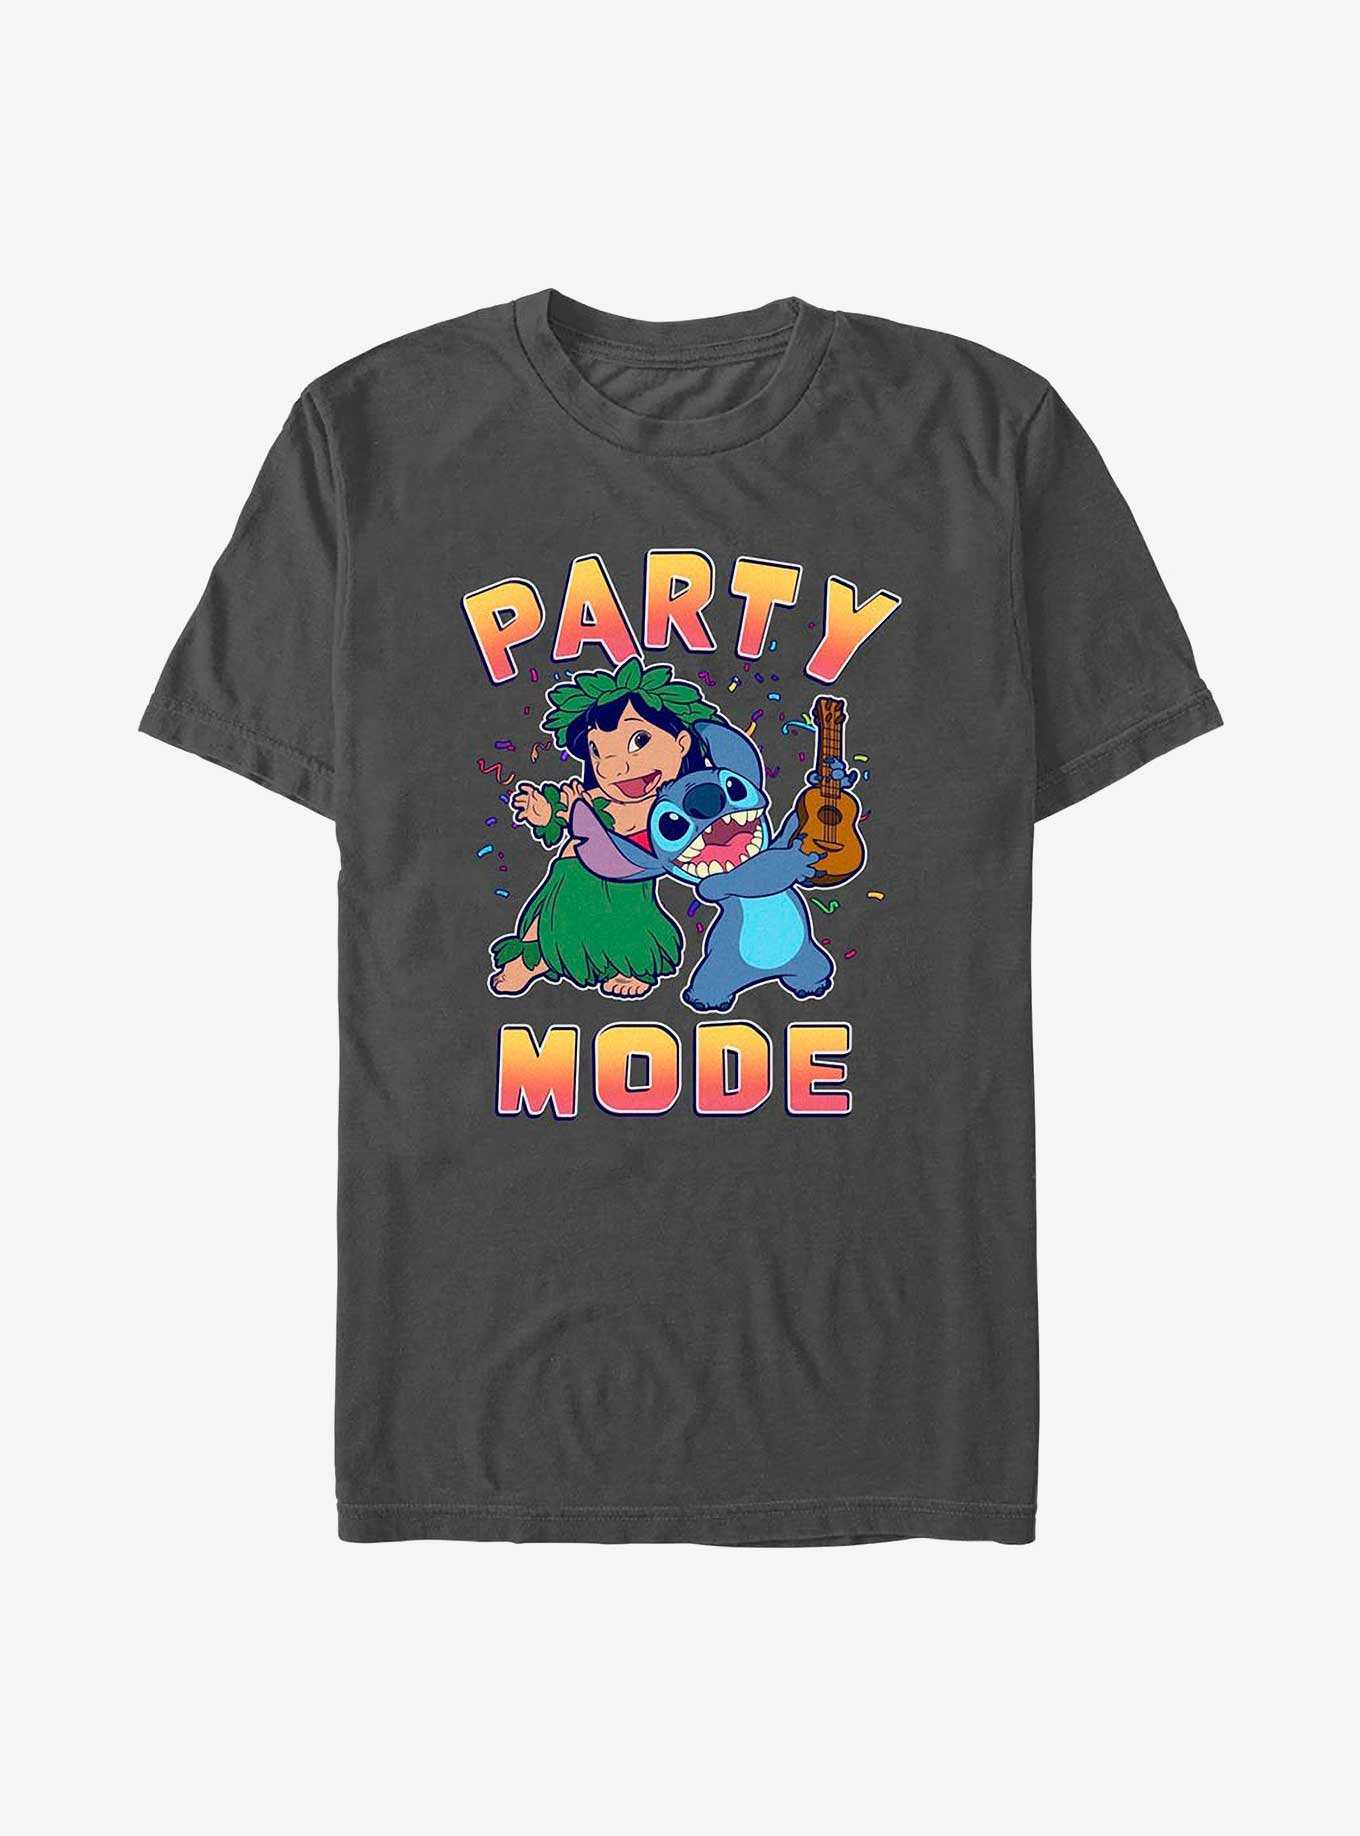 Disney Lilo & Stitch Party Mode T-Shirt, , hi-res